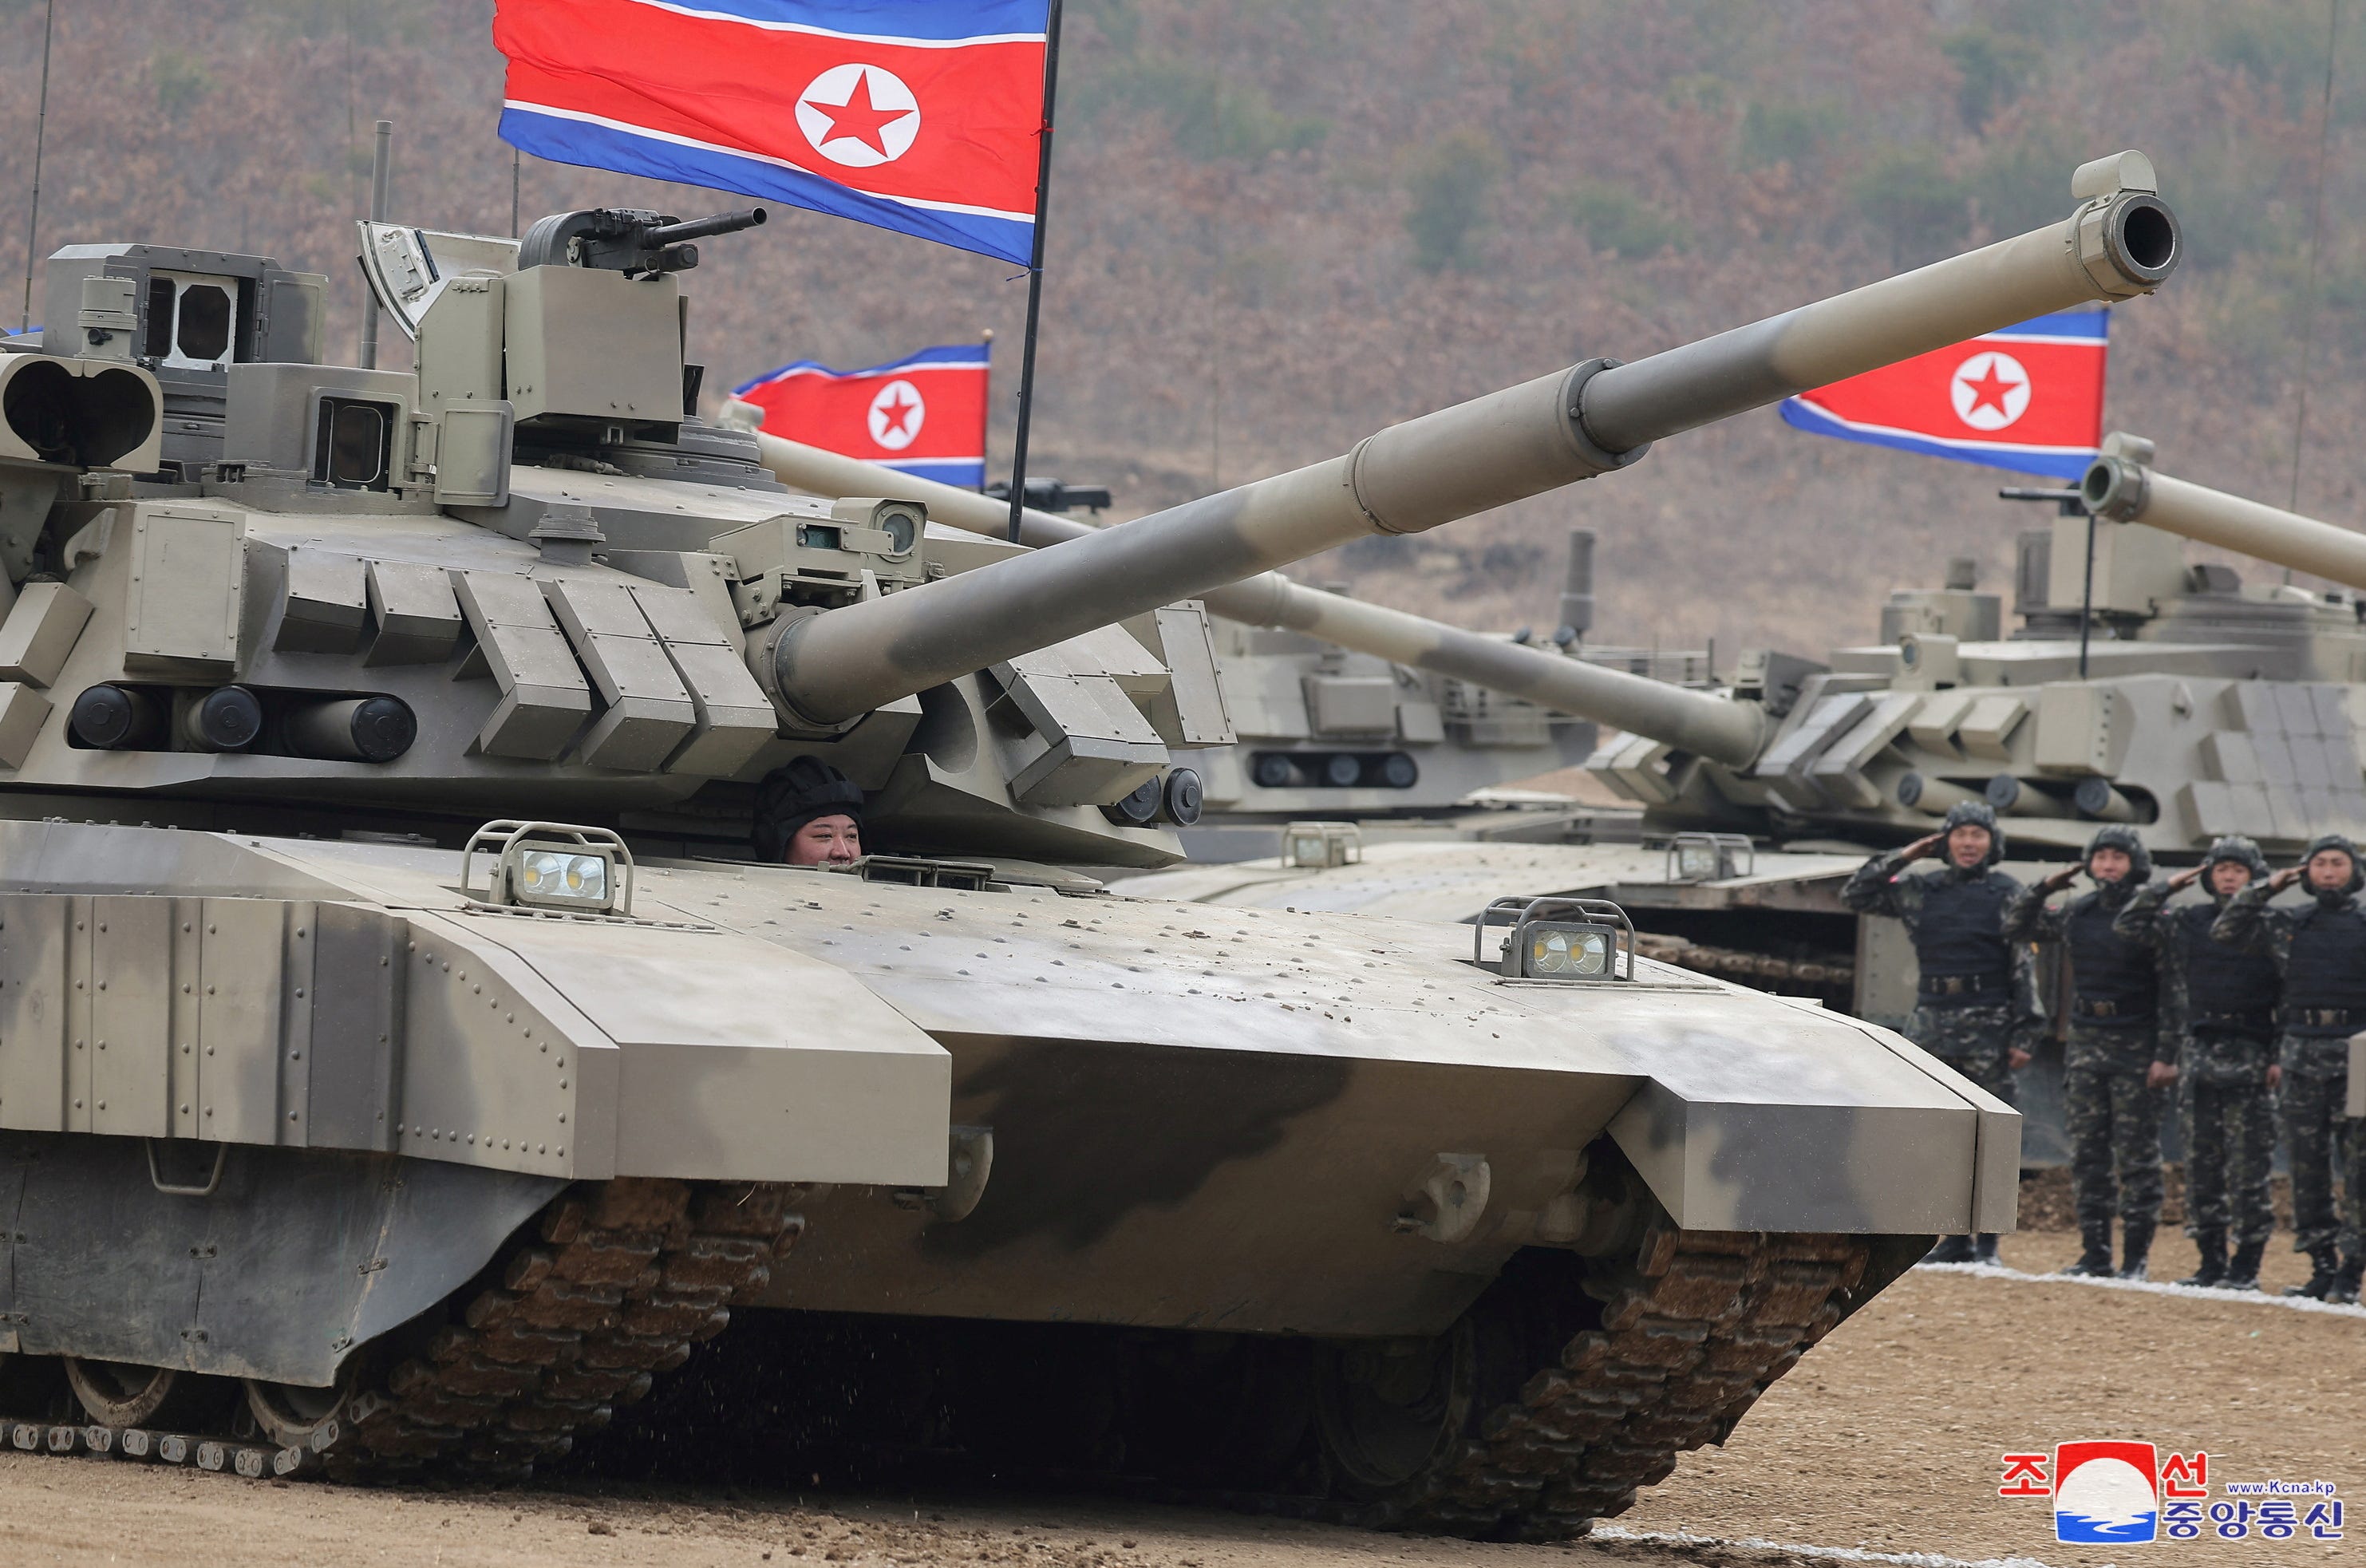 Der nordkoreanische Machthaber Kim Jong Un sitzt während einer Militärdemonstration in einem Panzer.